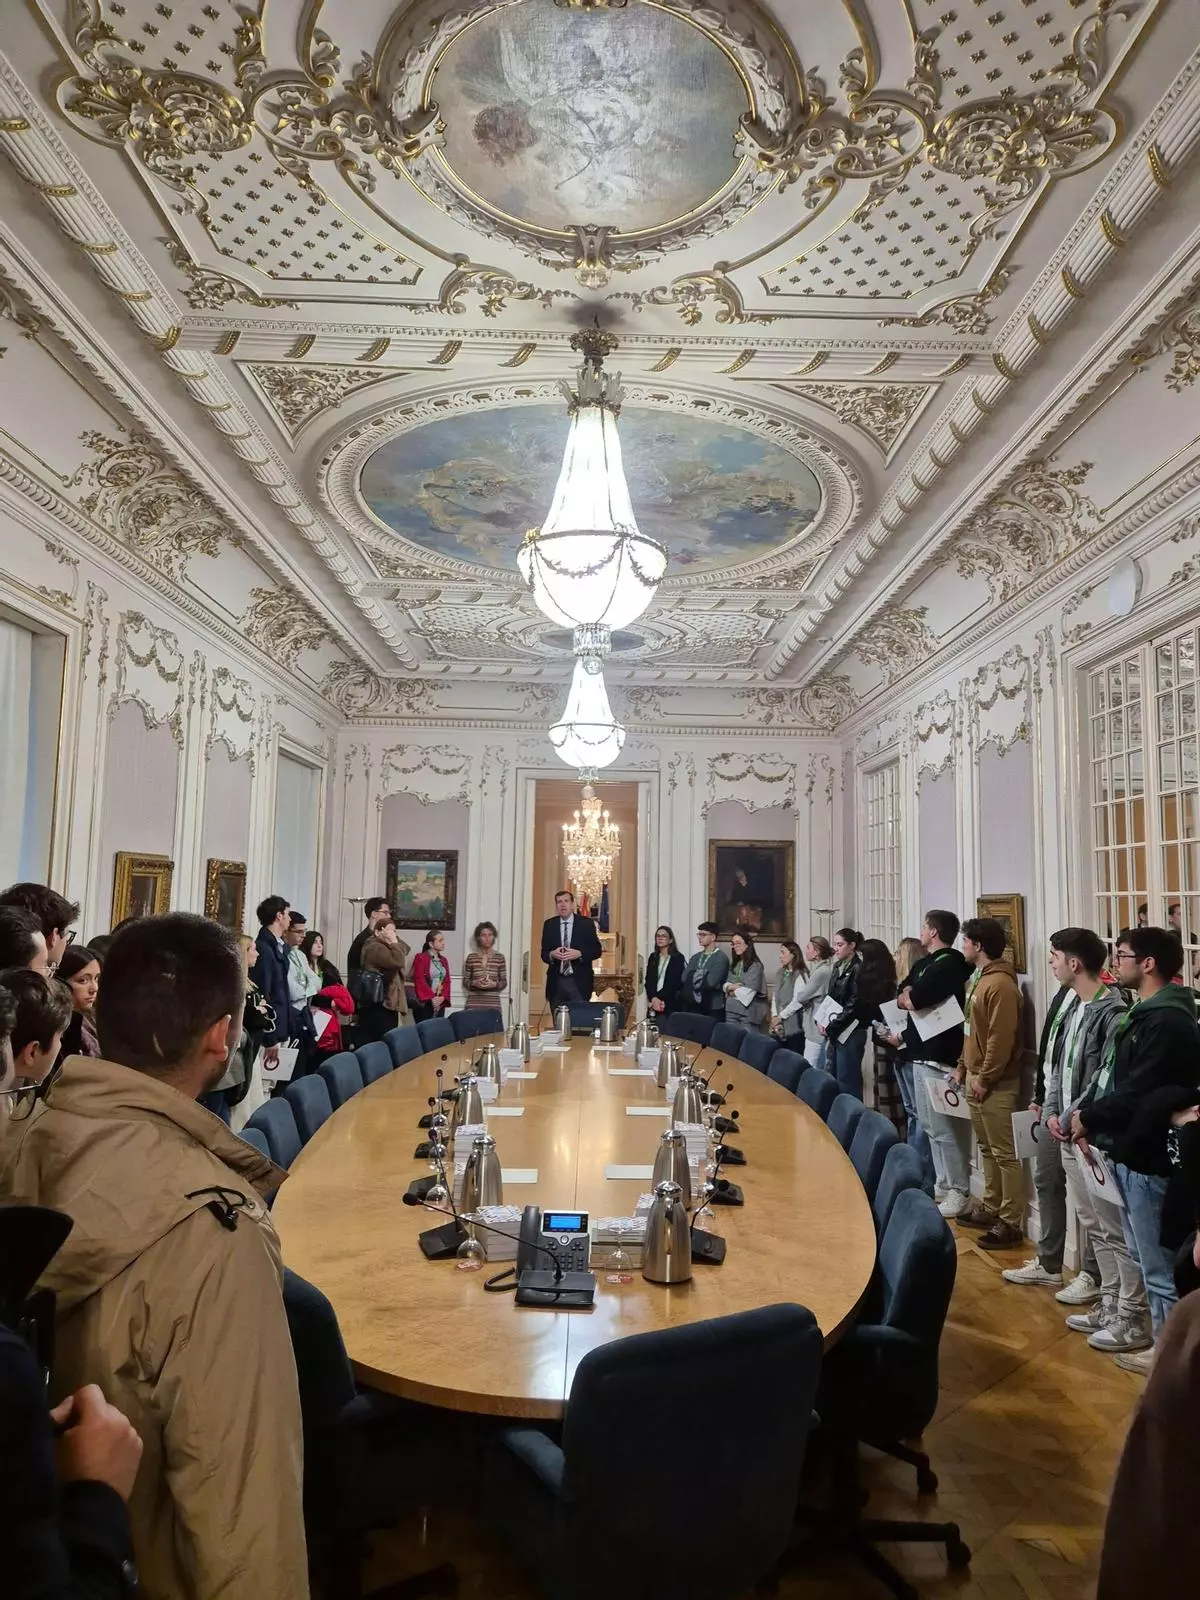 Forjando profesionales del Derecho en contextos reales: la visita a las cortes valencianas